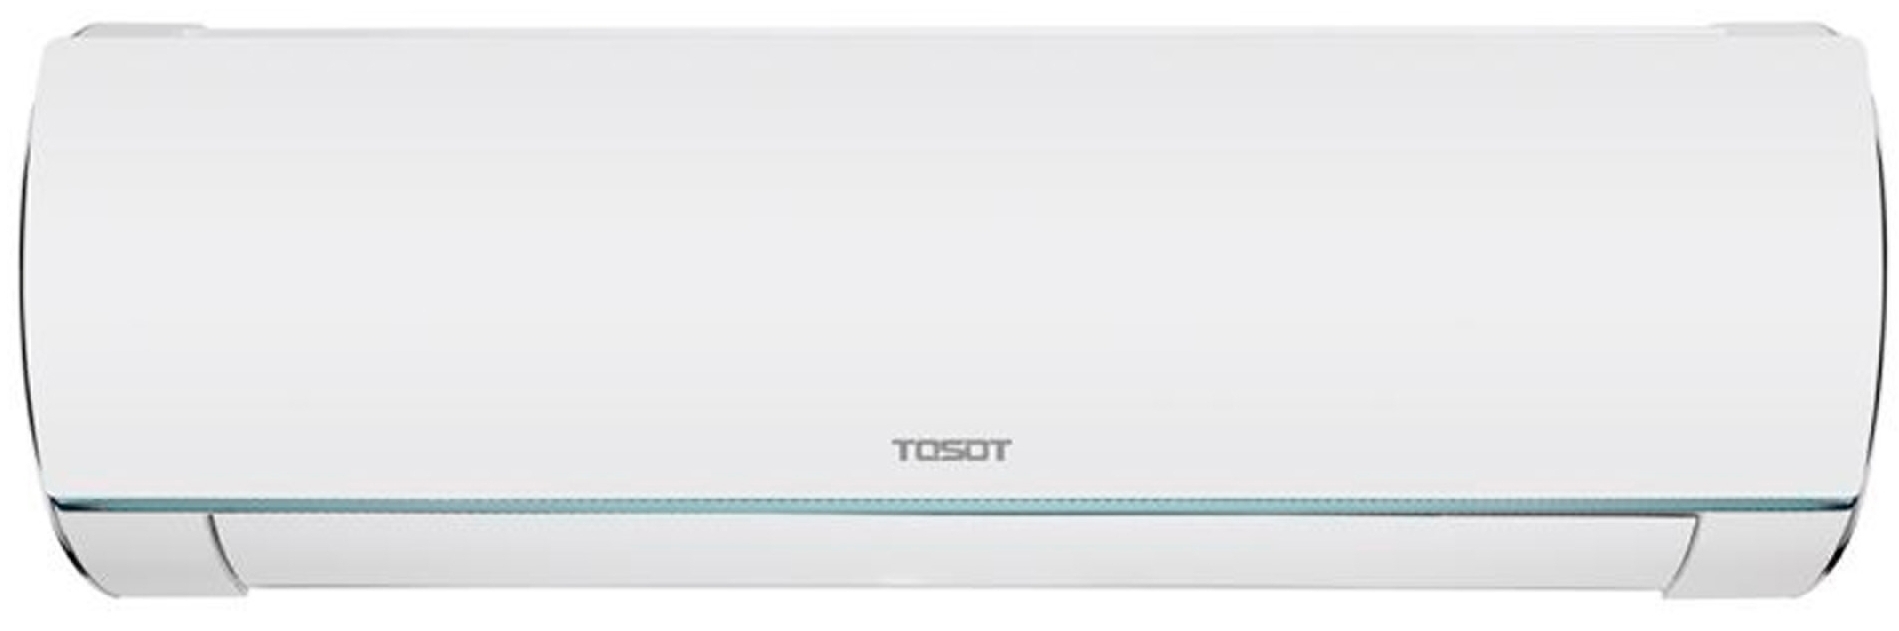 Кондиционер сплит-система Tosot Lyra Winter Inverter R32 GF-24W2 цена 54607.35 грн - фотография 2